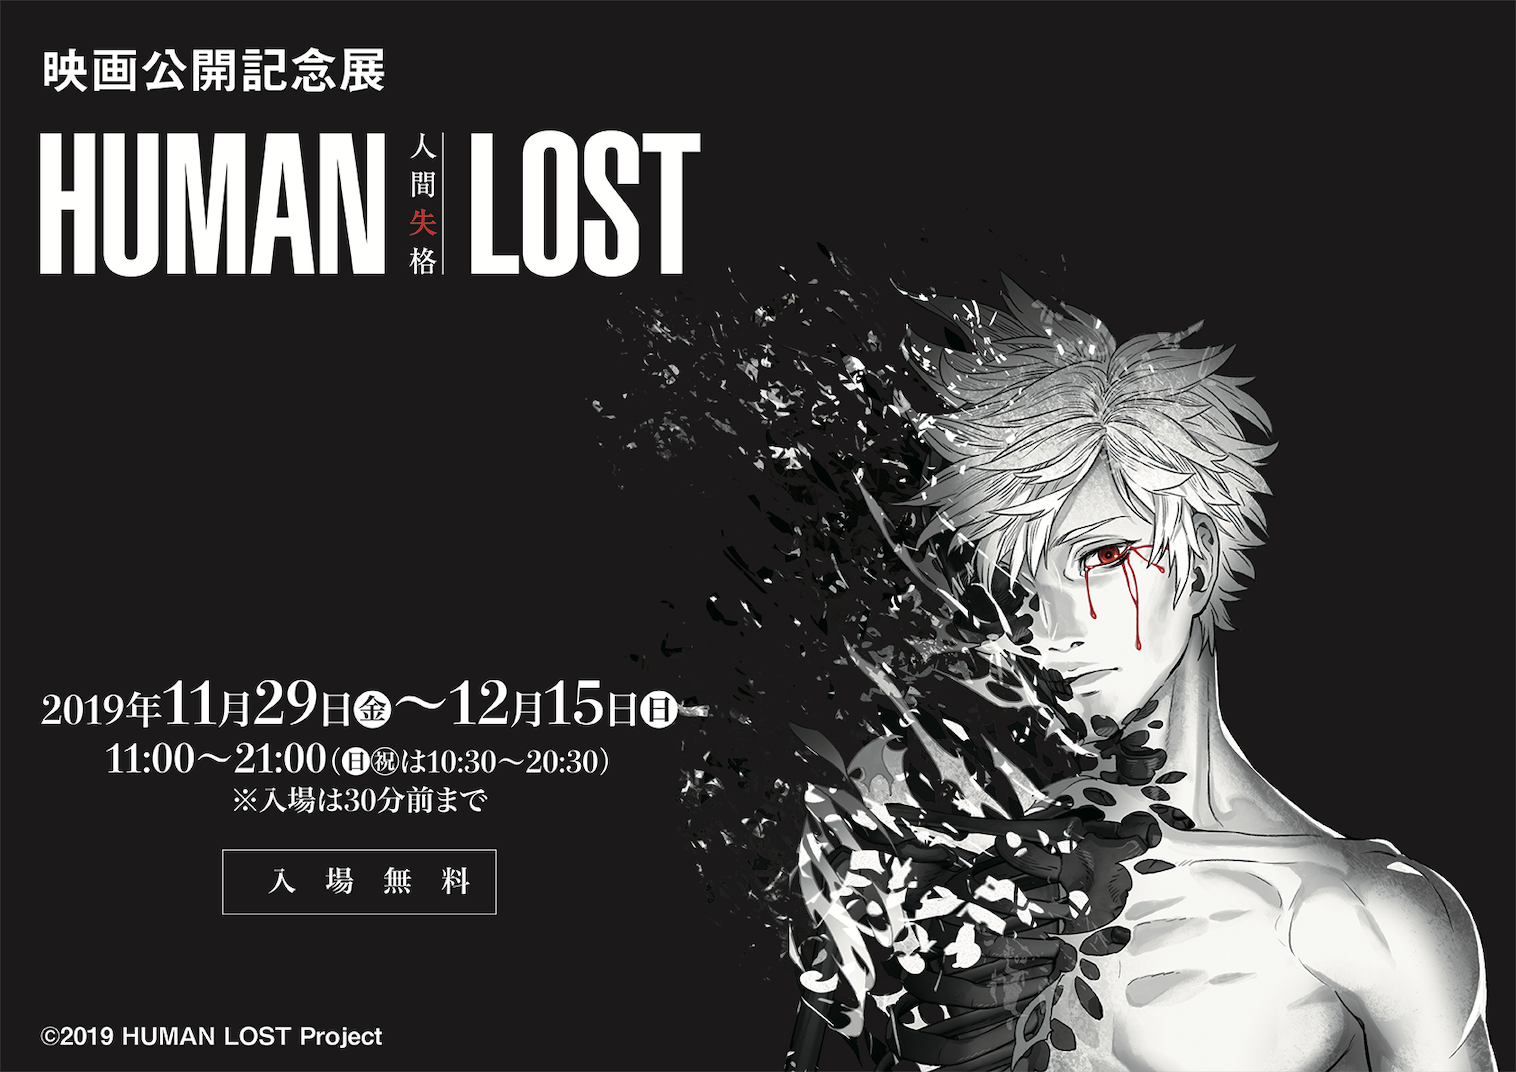 映画公開記念展 Human Lost 人間失格 有楽町マルイにて11月29日より開催 ダブルエルのプレスリリース